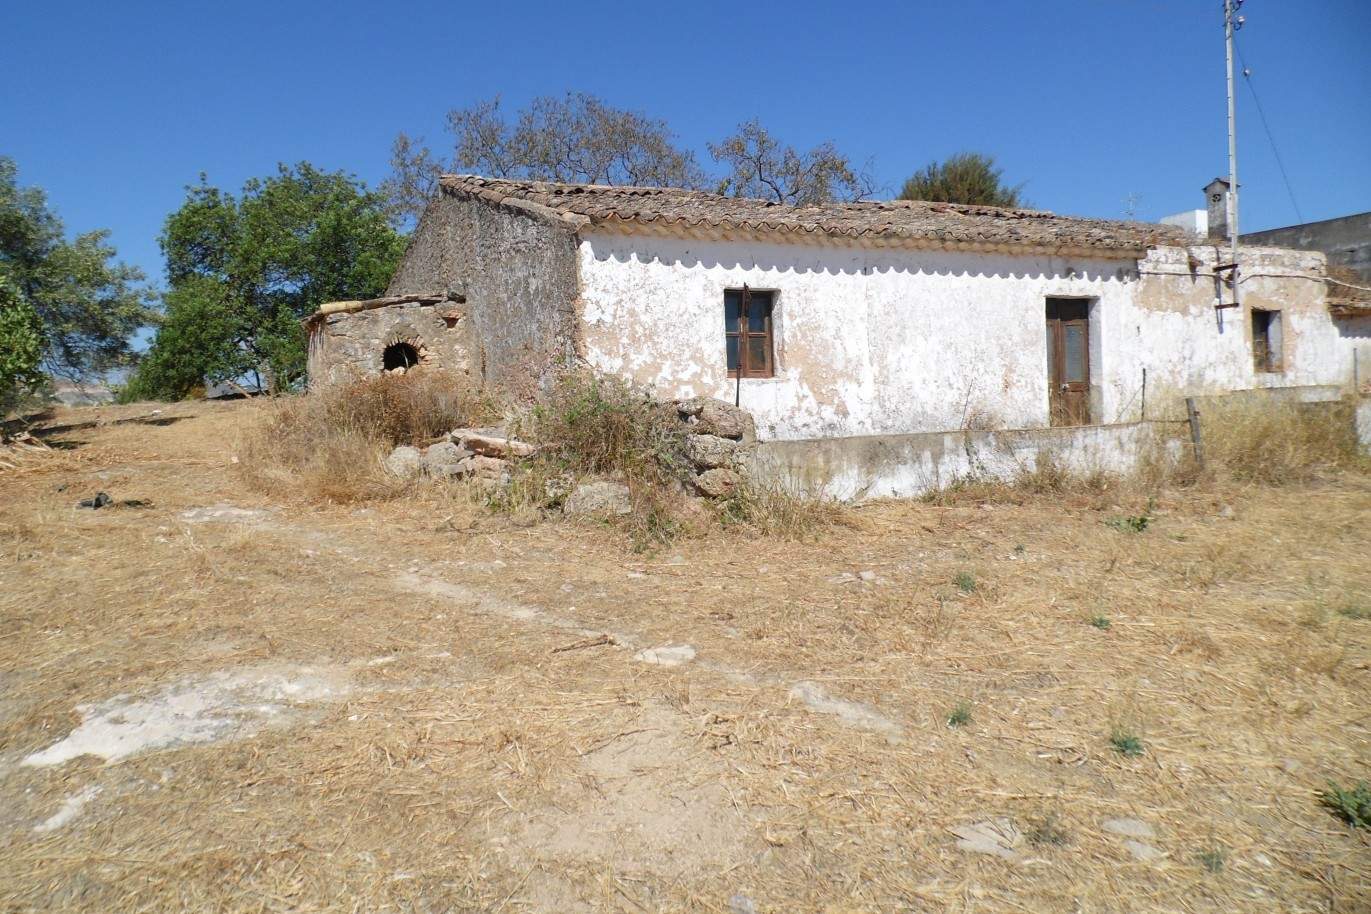 Terreno en venta, con vistas al mar y sierra, Loulé, Algarve, Portugal_67488